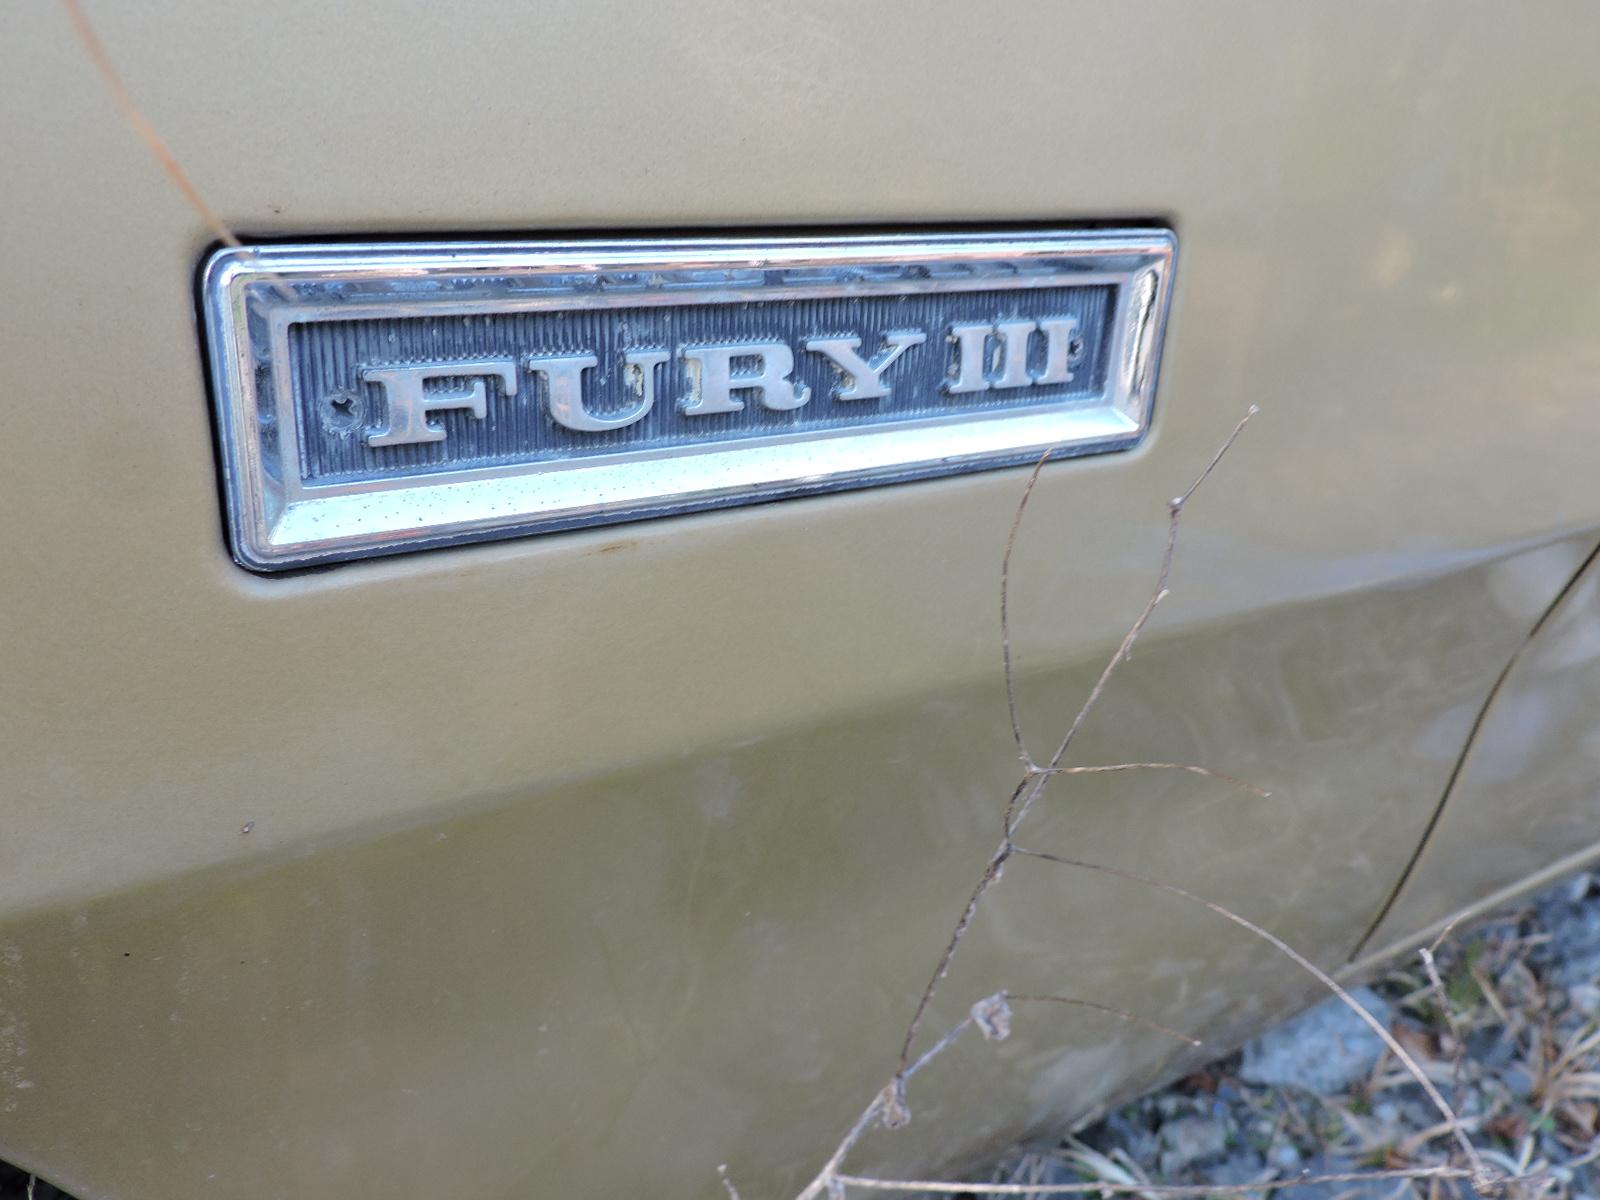 1968 Plymouth Fury III Sedan / NY Transferable Registration